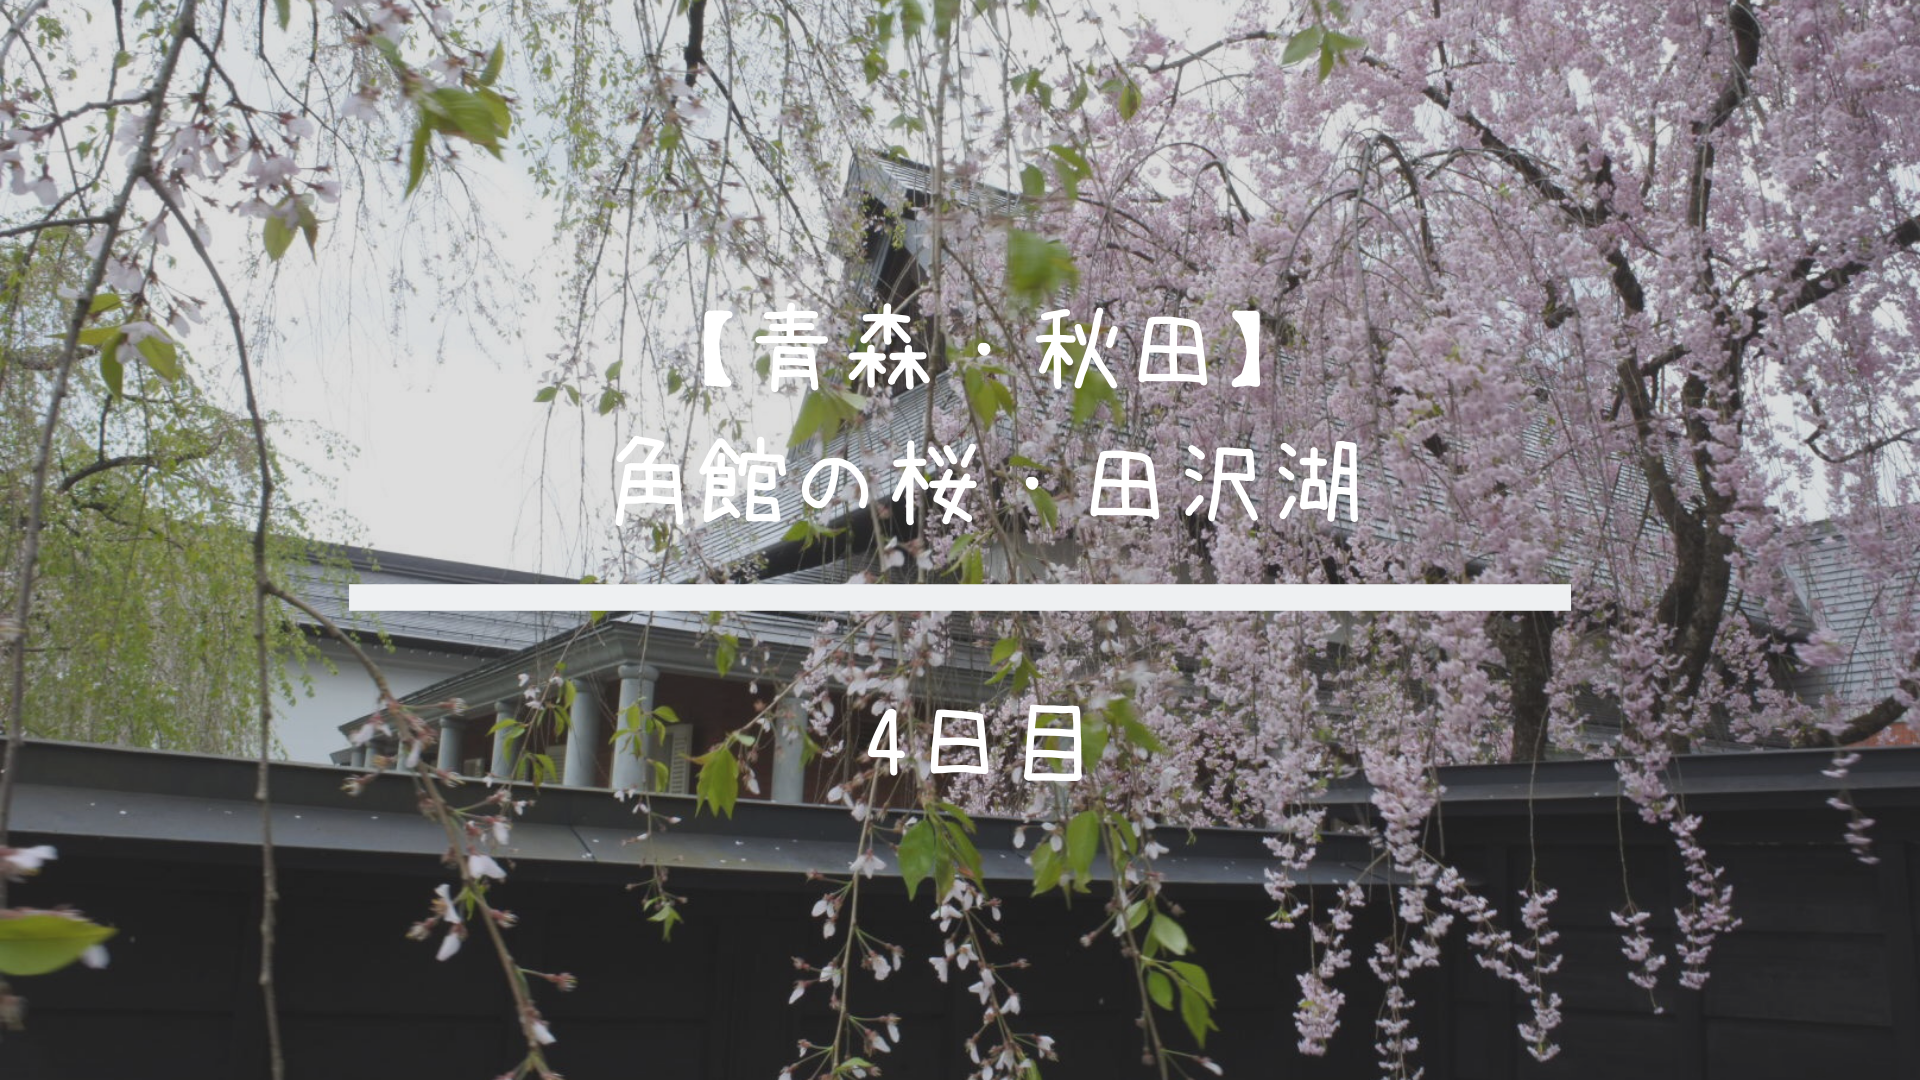 青森 秋田旅行 角館の桜と田沢湖へ行ってきました 19gw 4日目 共働きくま夫婦のブログ